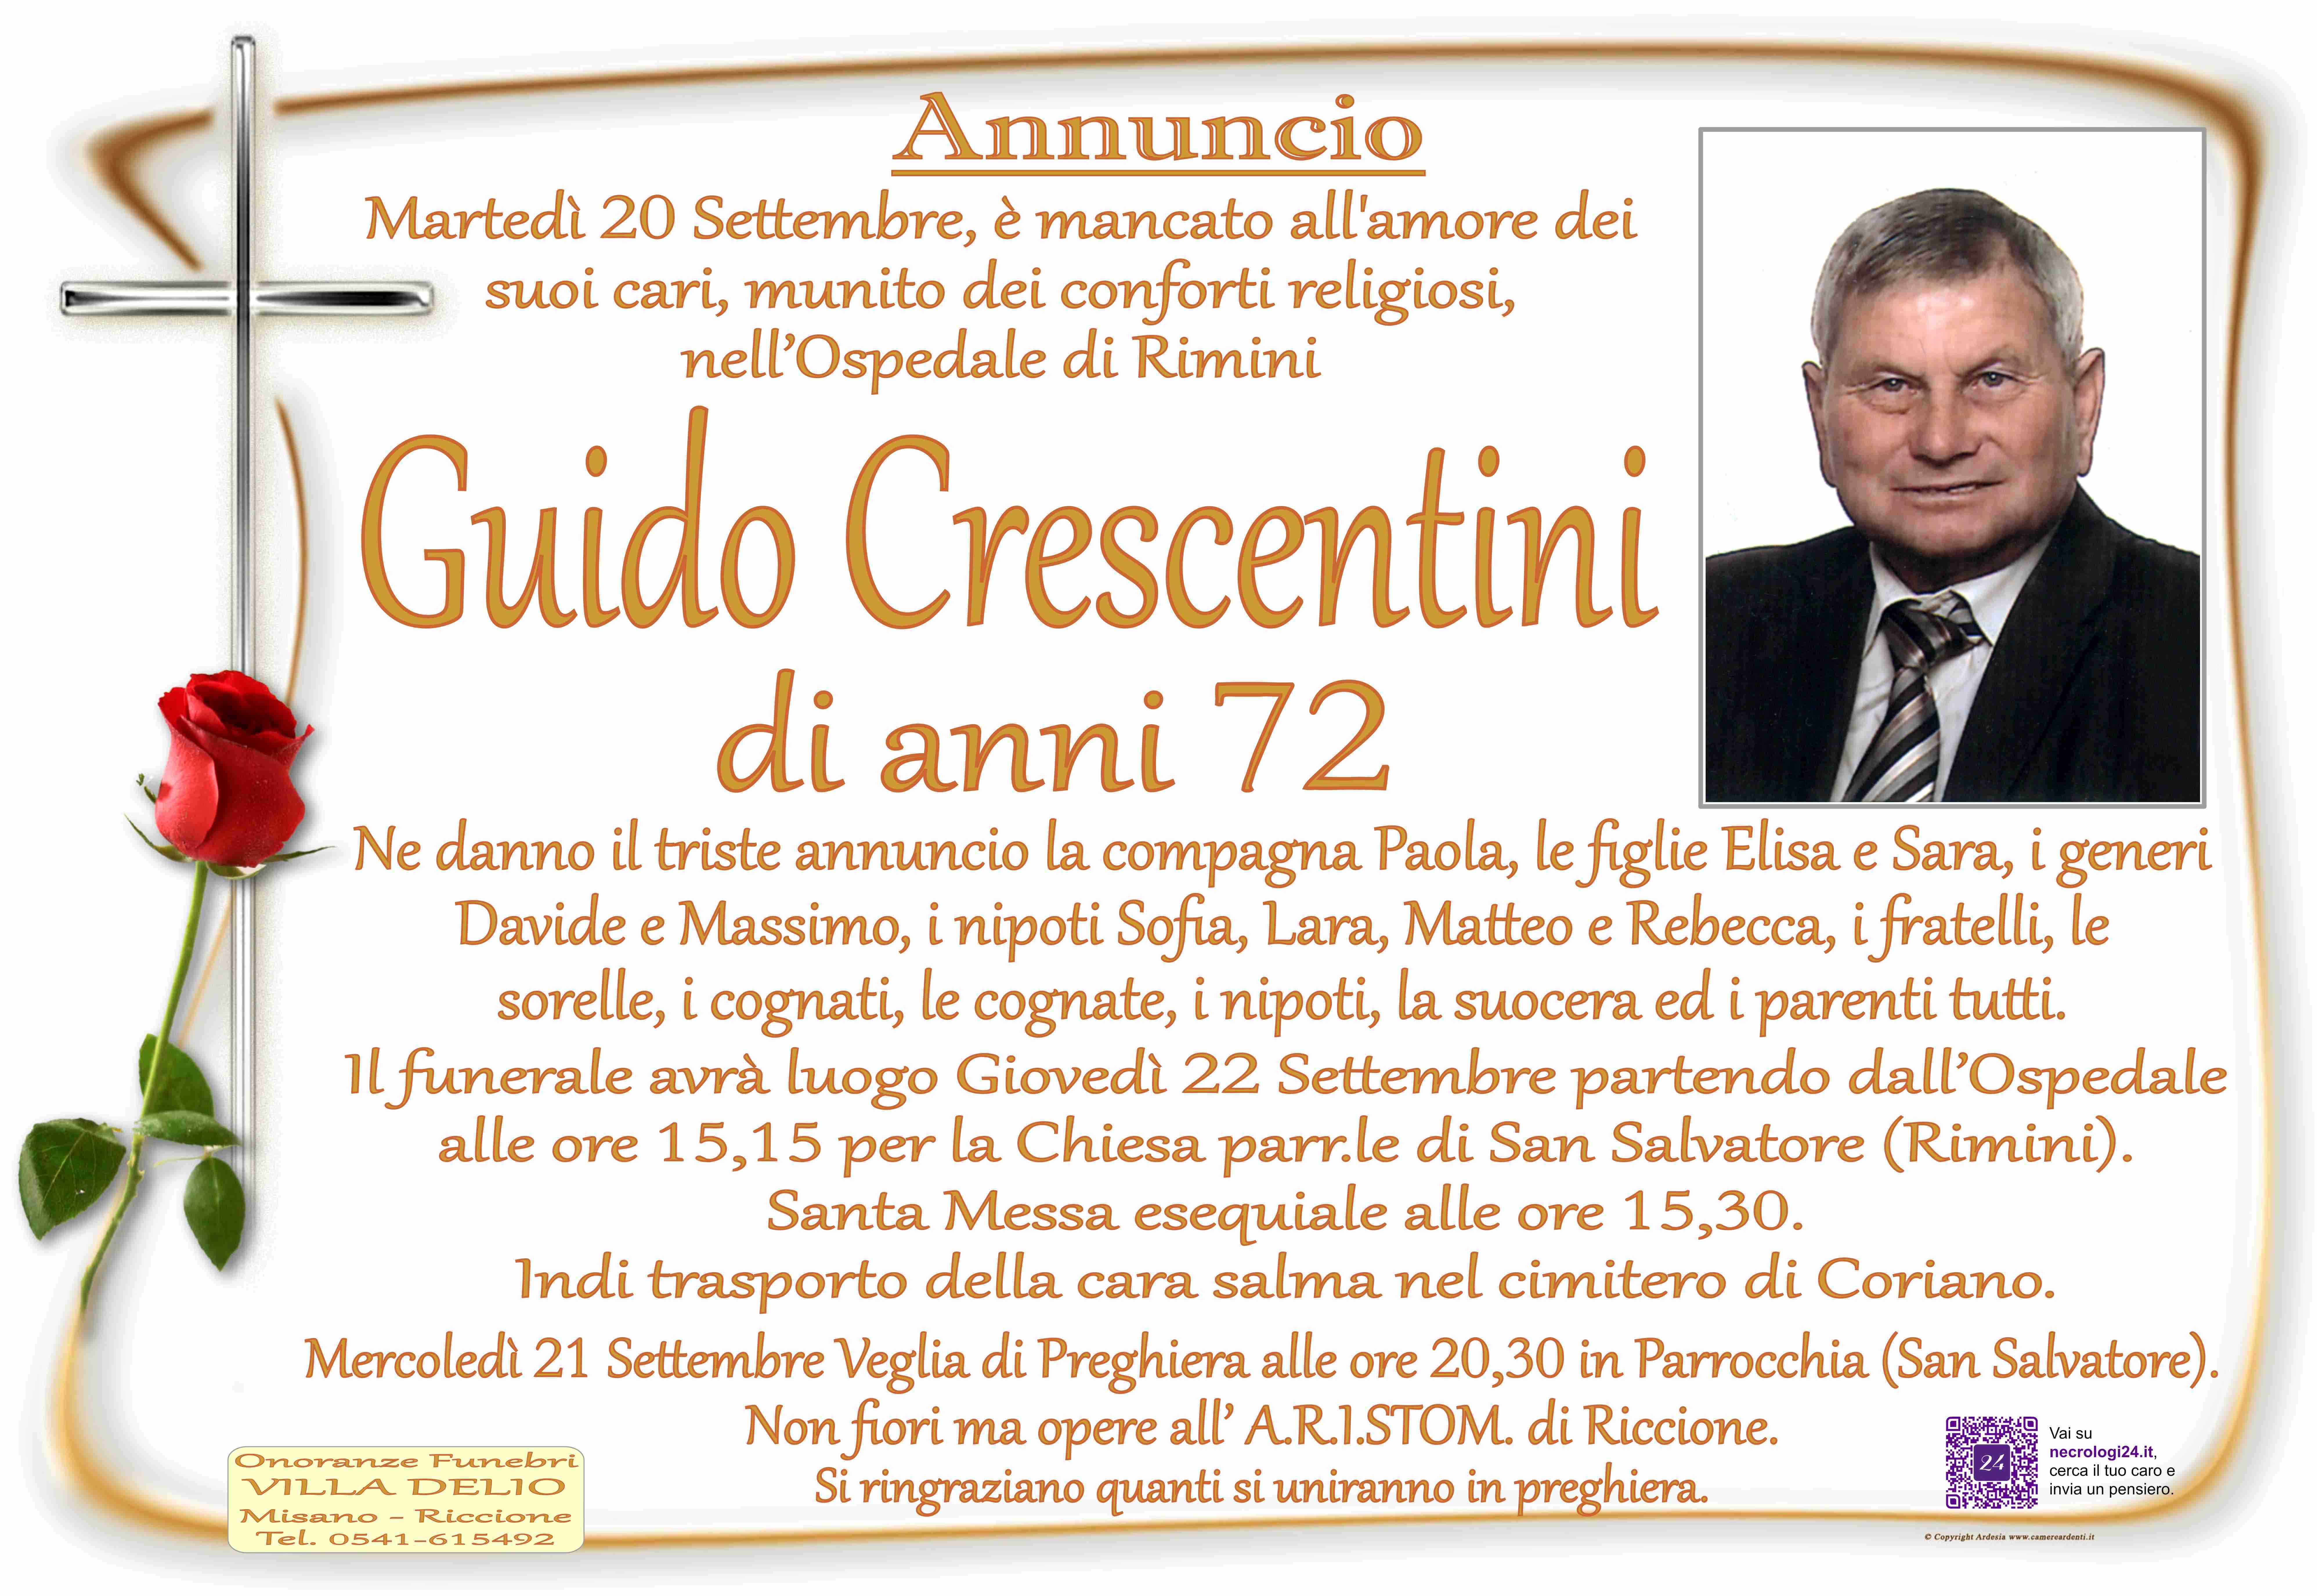 Guido Crescentini